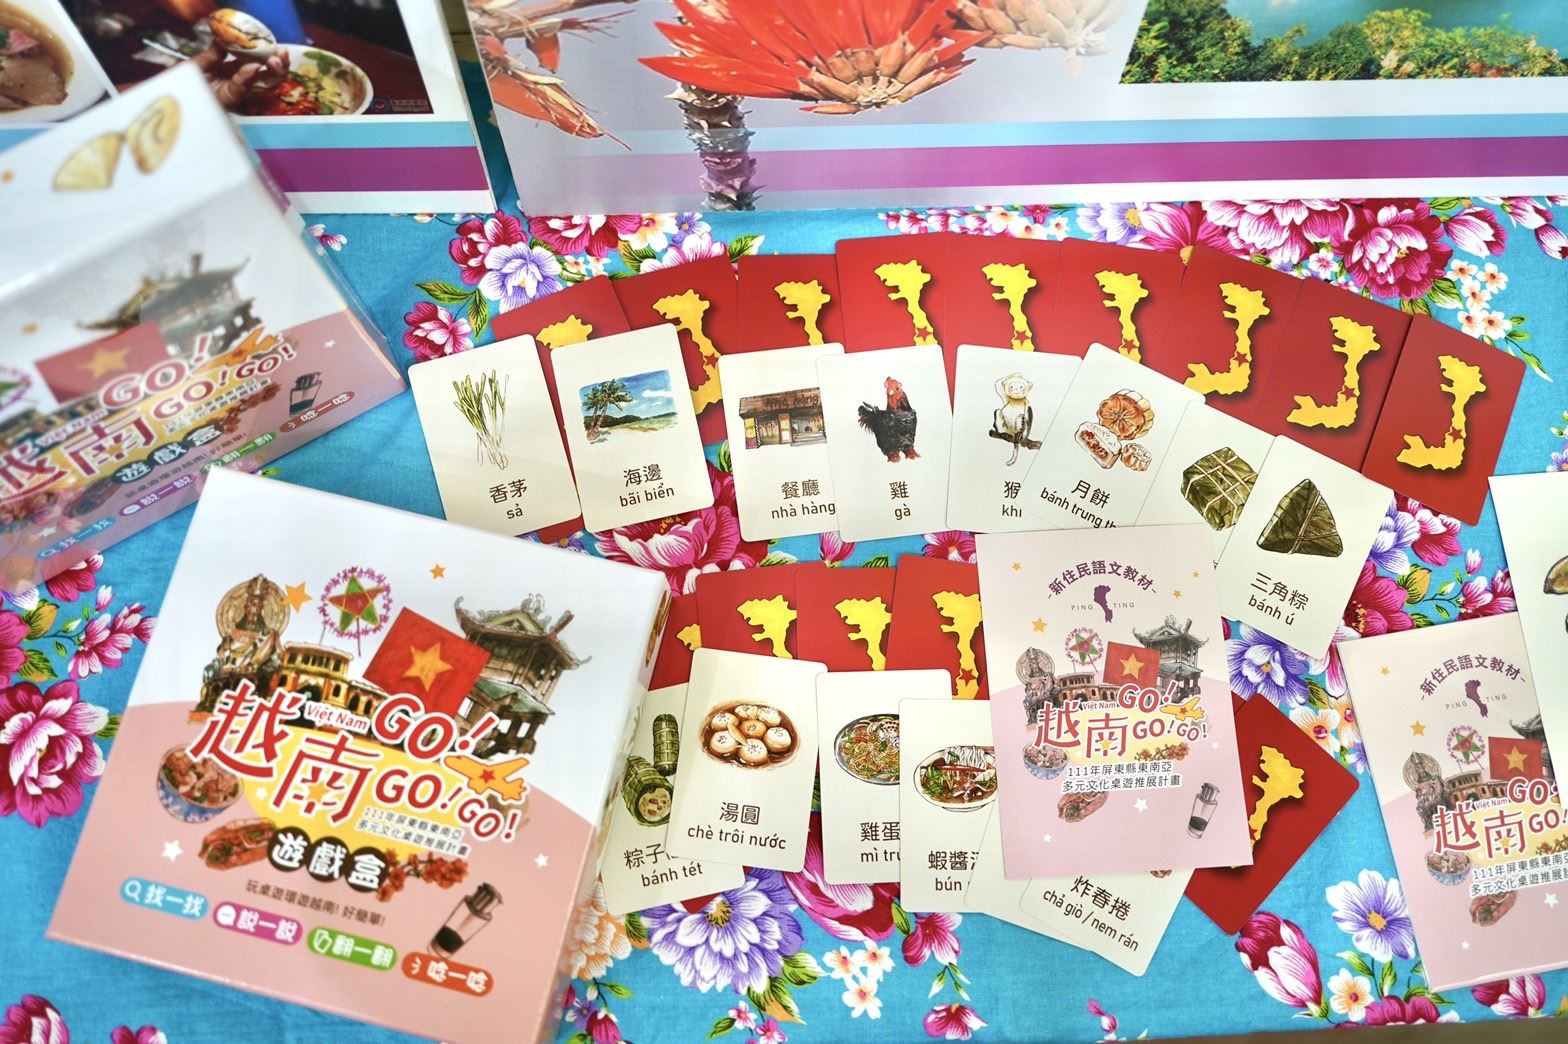 Bộ “Sách ảnh về board game bằng tiếng Việt” đầu tiên tại Đài Loan. (Ảnh: Lấy từ chính quyền huyện Bình Đông)